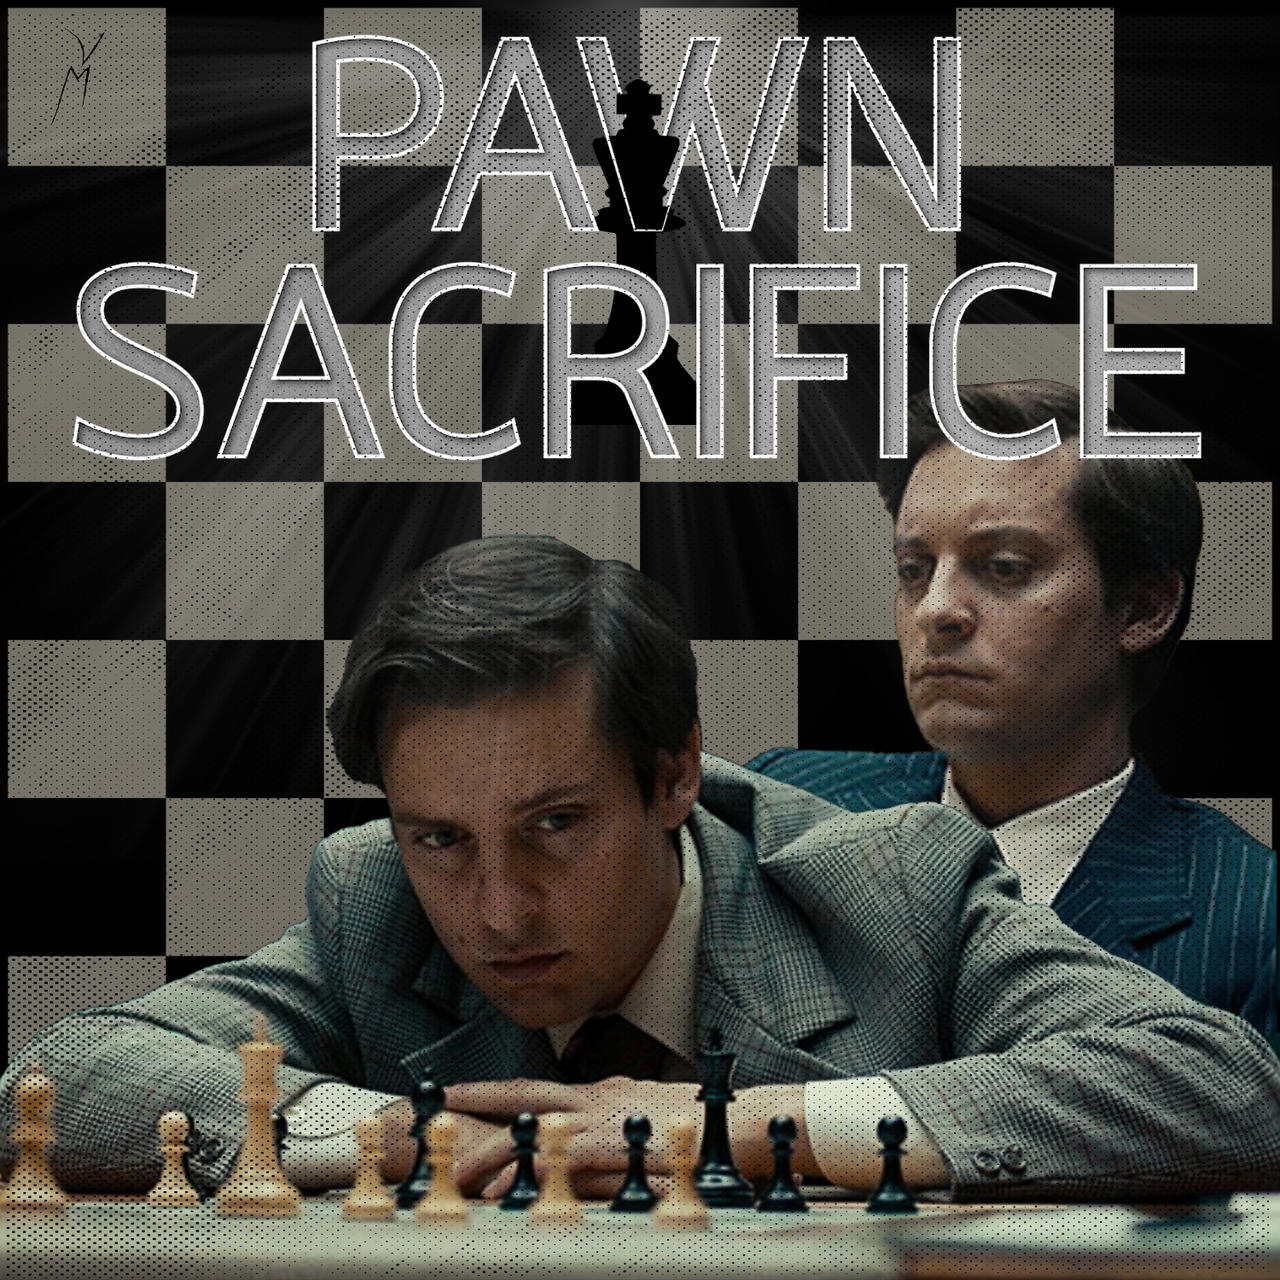 Pawn Sacrifice - Movie